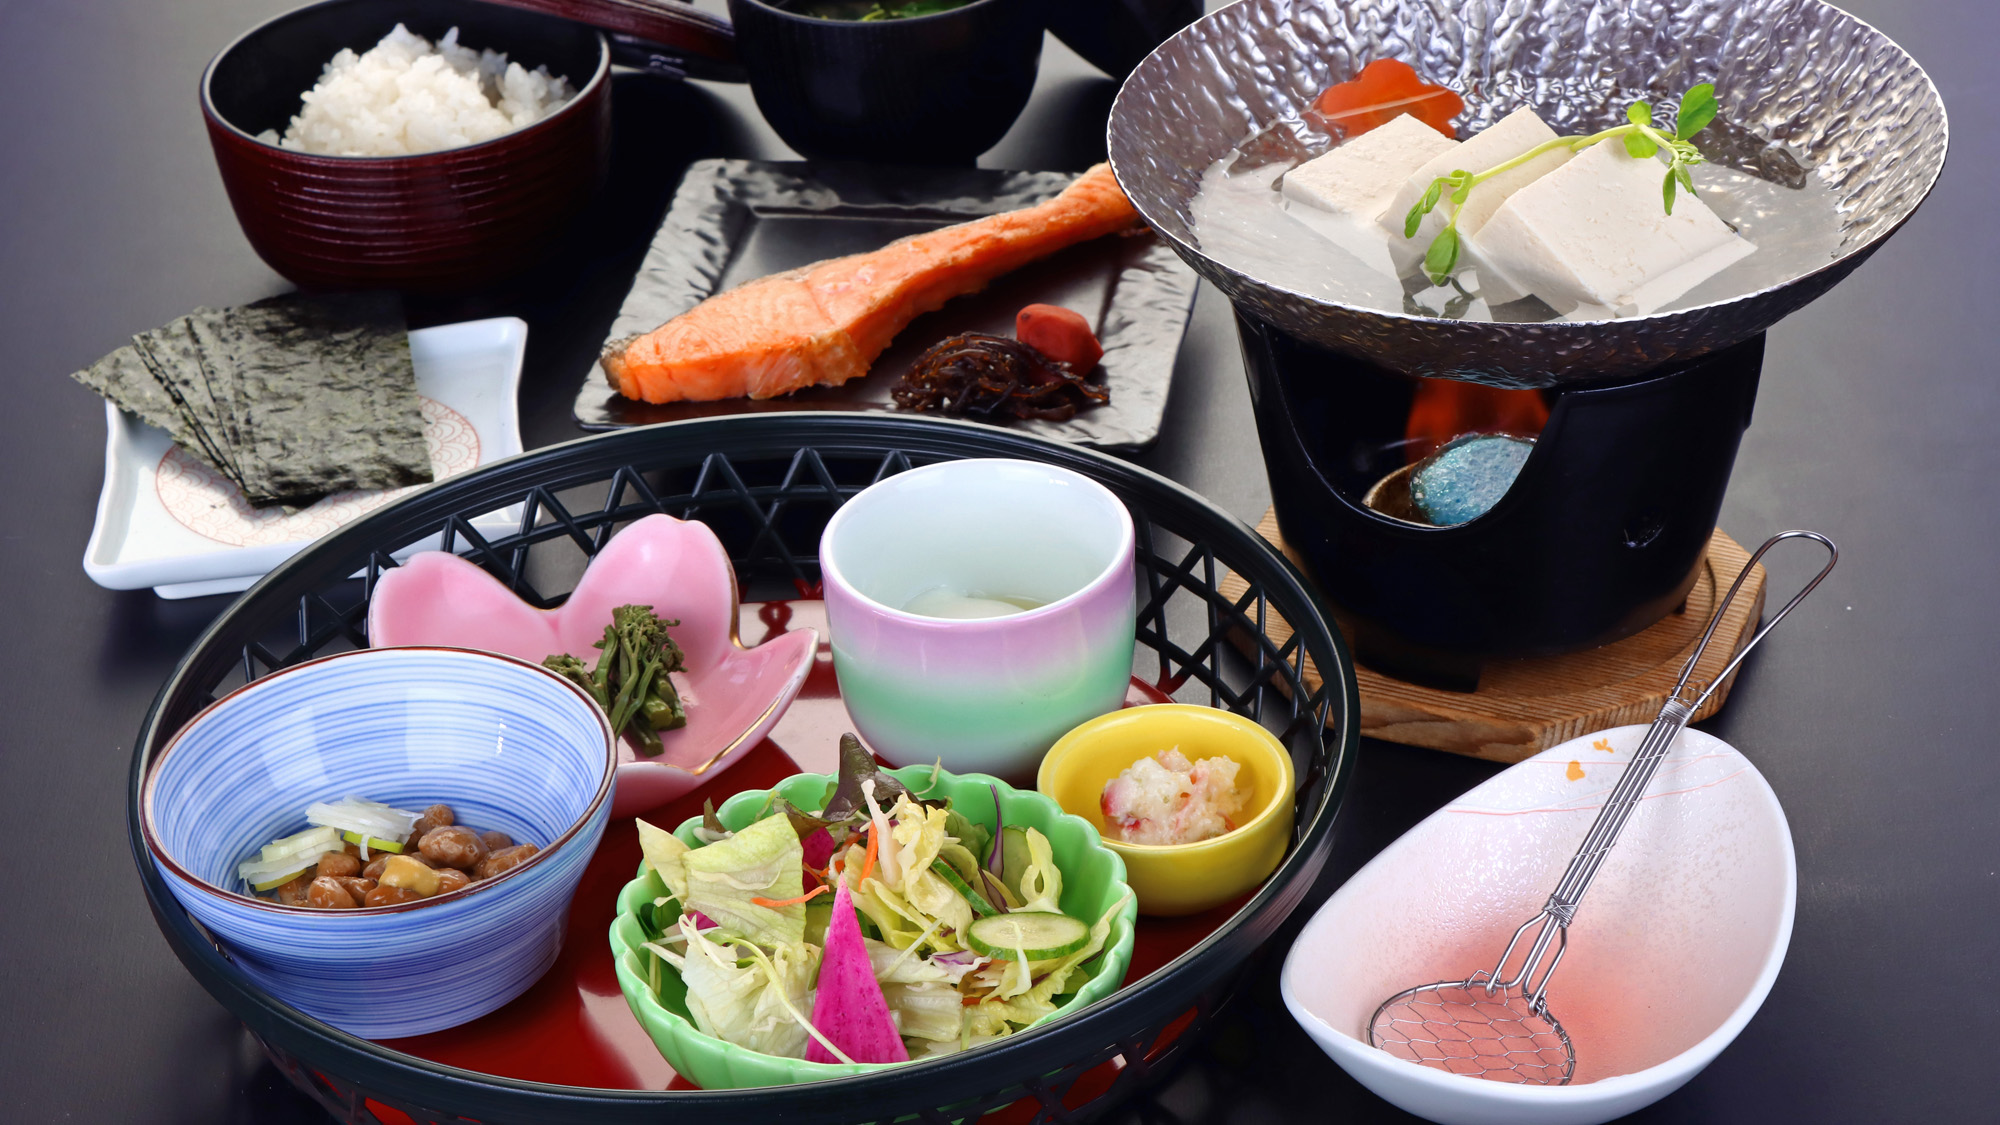 #選べる朝食≪和≫　焼き魚と湯豆腐を中心に、お米に合うおかずが並んだほっとする和朝食。